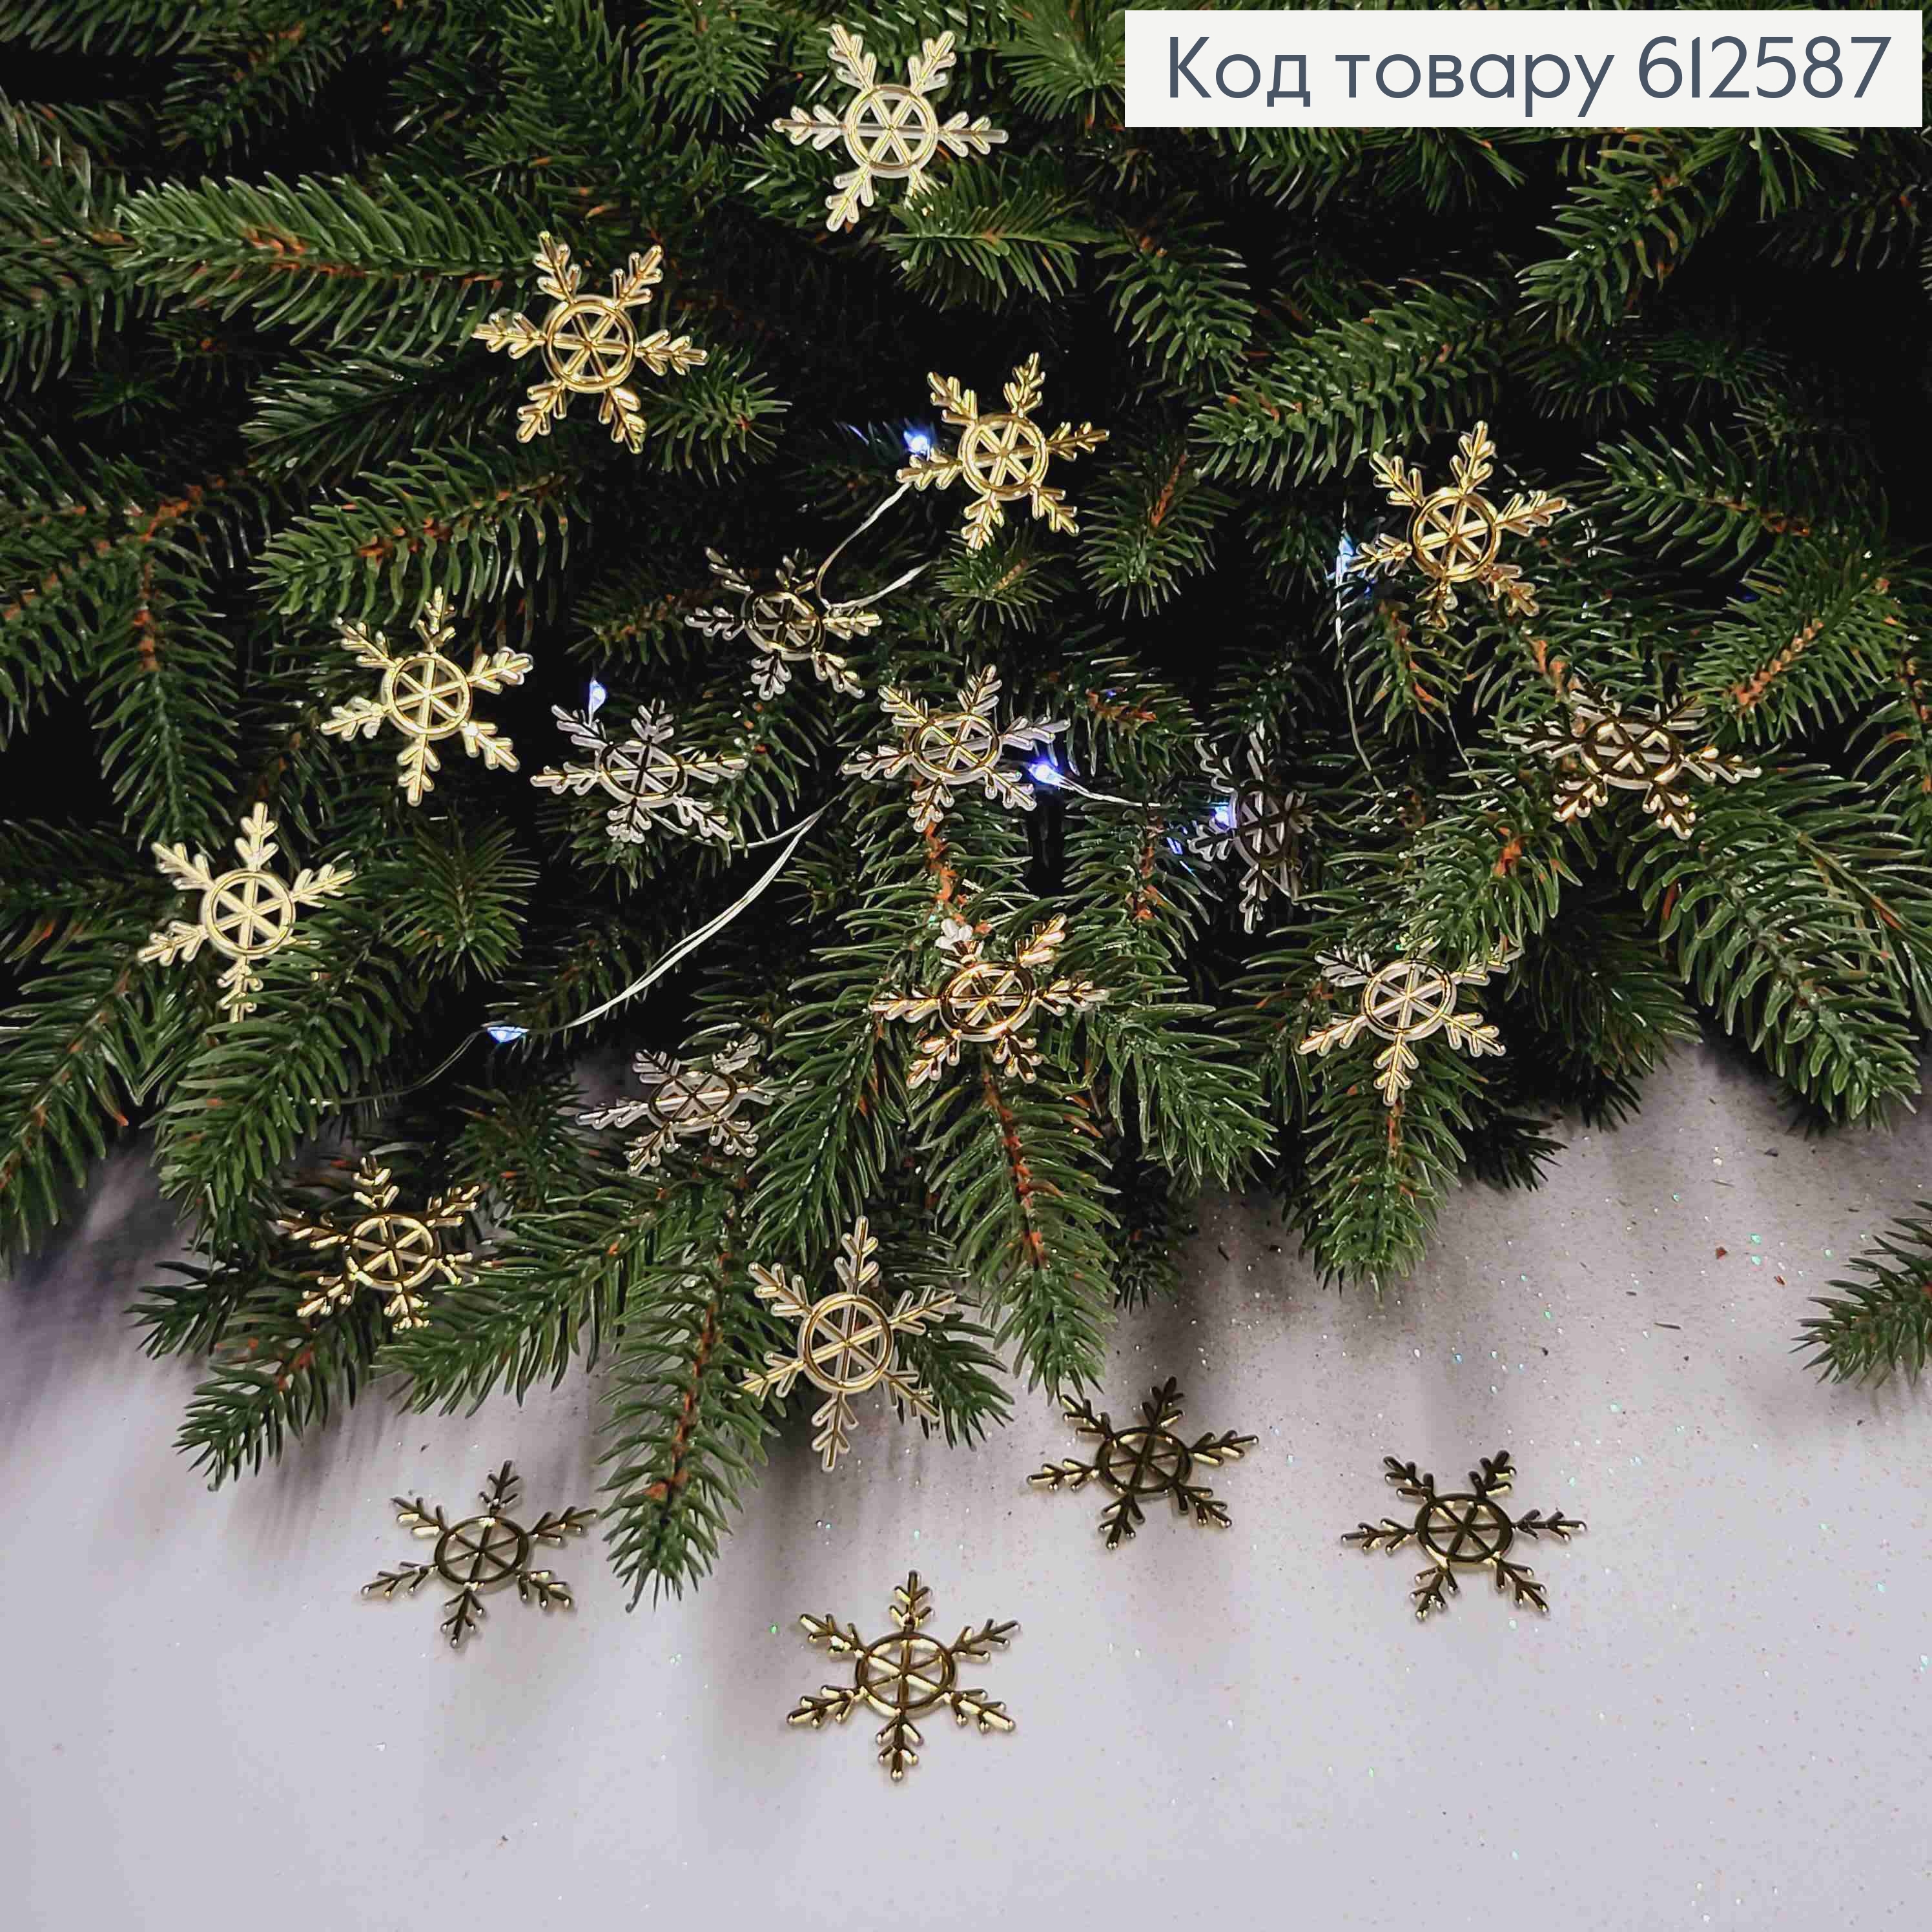 Новогодняя фигура, набор снежинок, пластик, Золотого цвета, 20шт/уп, 3,5см, Украина. 612587 фото 2